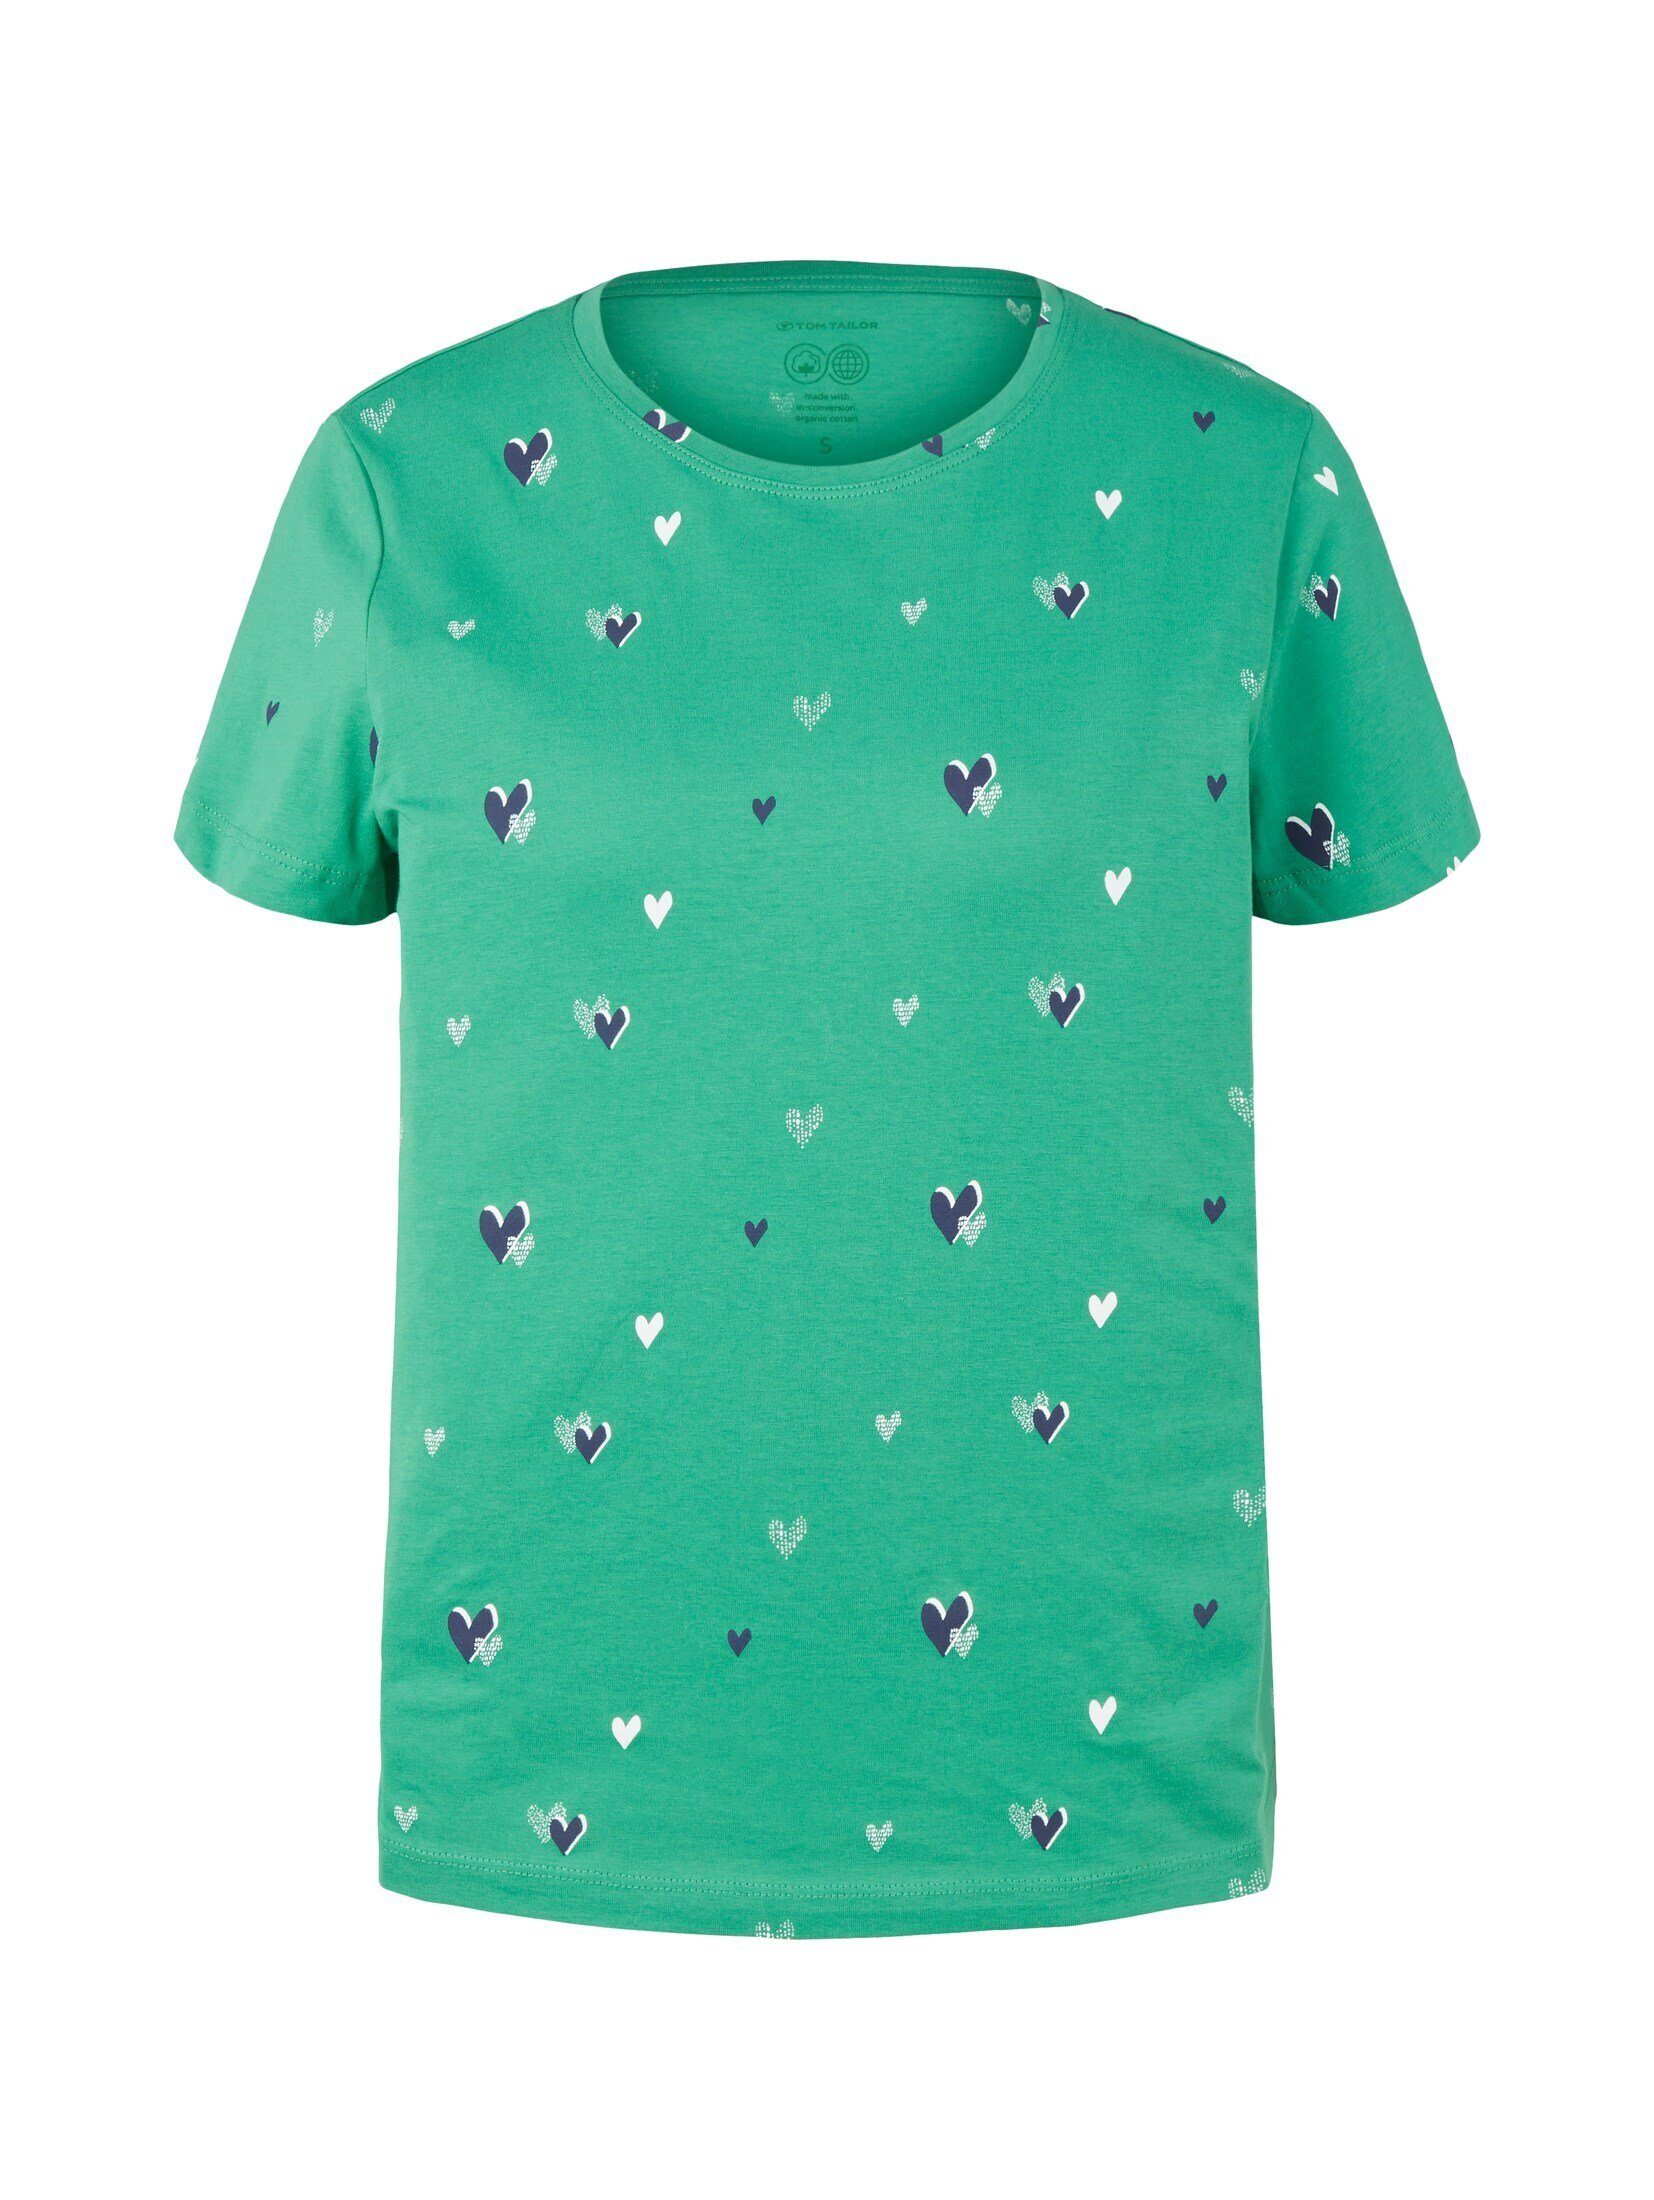 TOM TAILOR Print navy T-Shirt T-Shirt green design heart mit